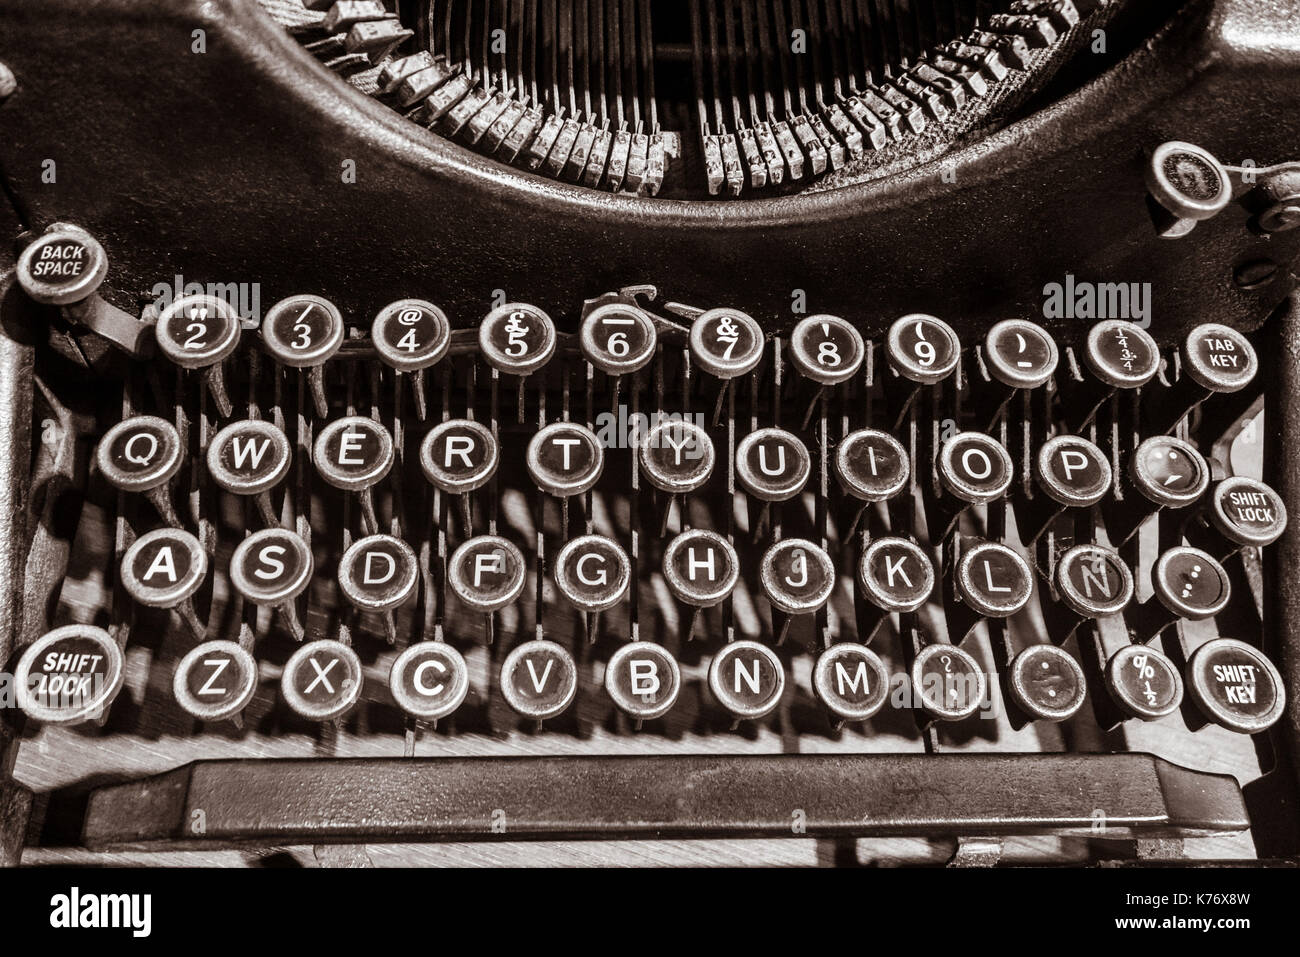 Old Typewriter. Stock Photo